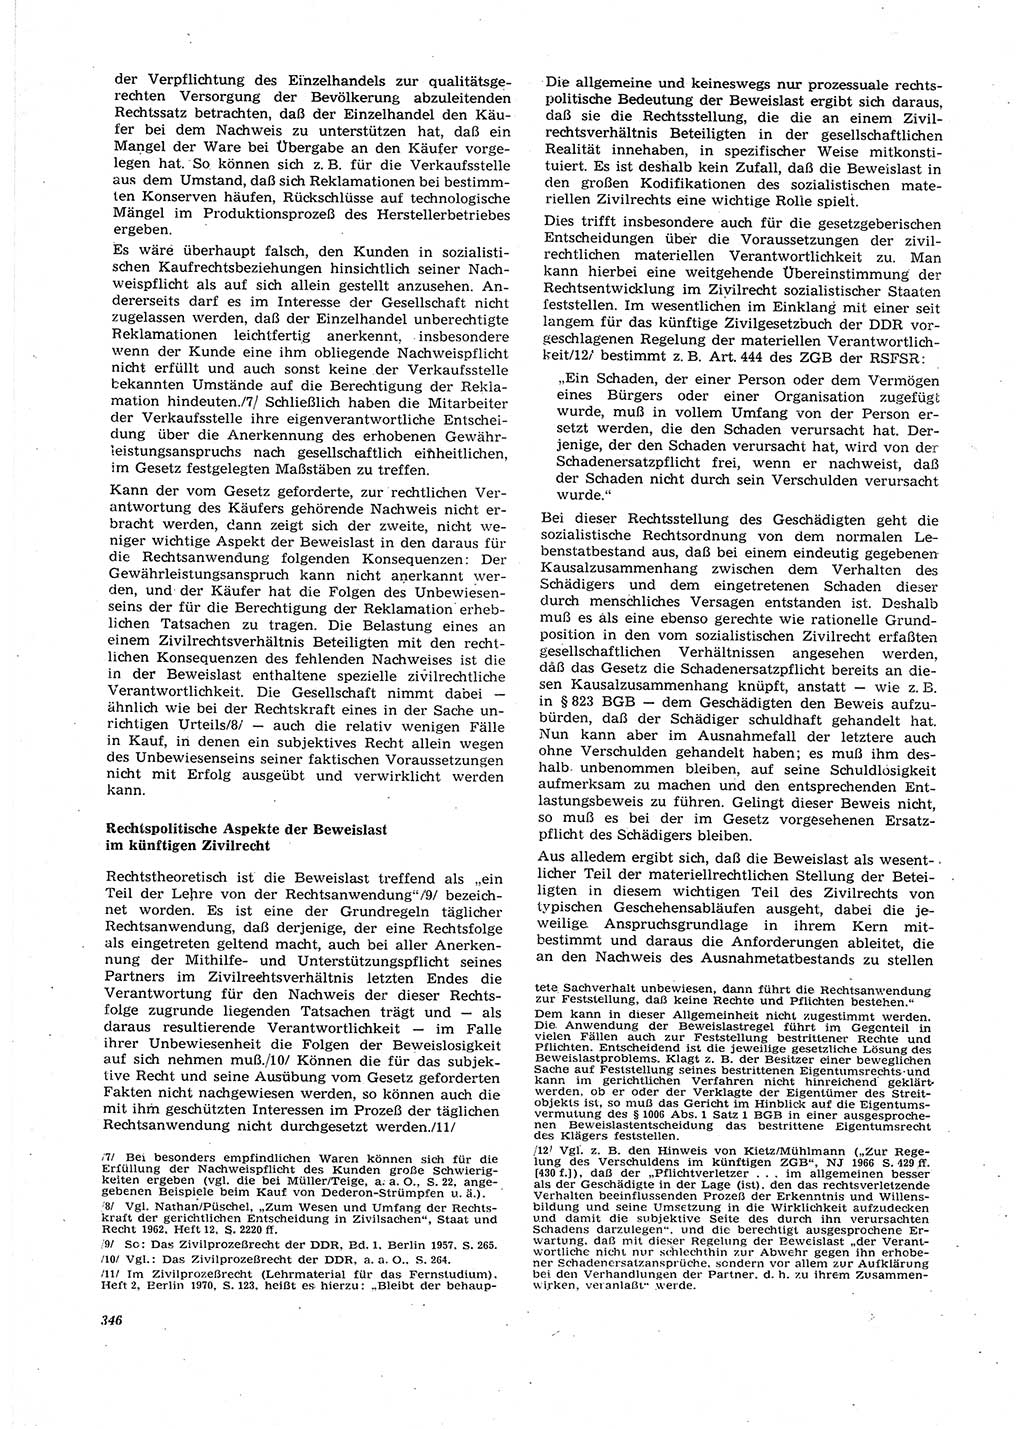 Neue Justiz (NJ), Zeitschrift für Recht und Rechtswissenschaft [Deutsche Demokratische Republik (DDR)], 27. Jahrgang 1973, Seite 346 (NJ DDR 1973, S. 346)